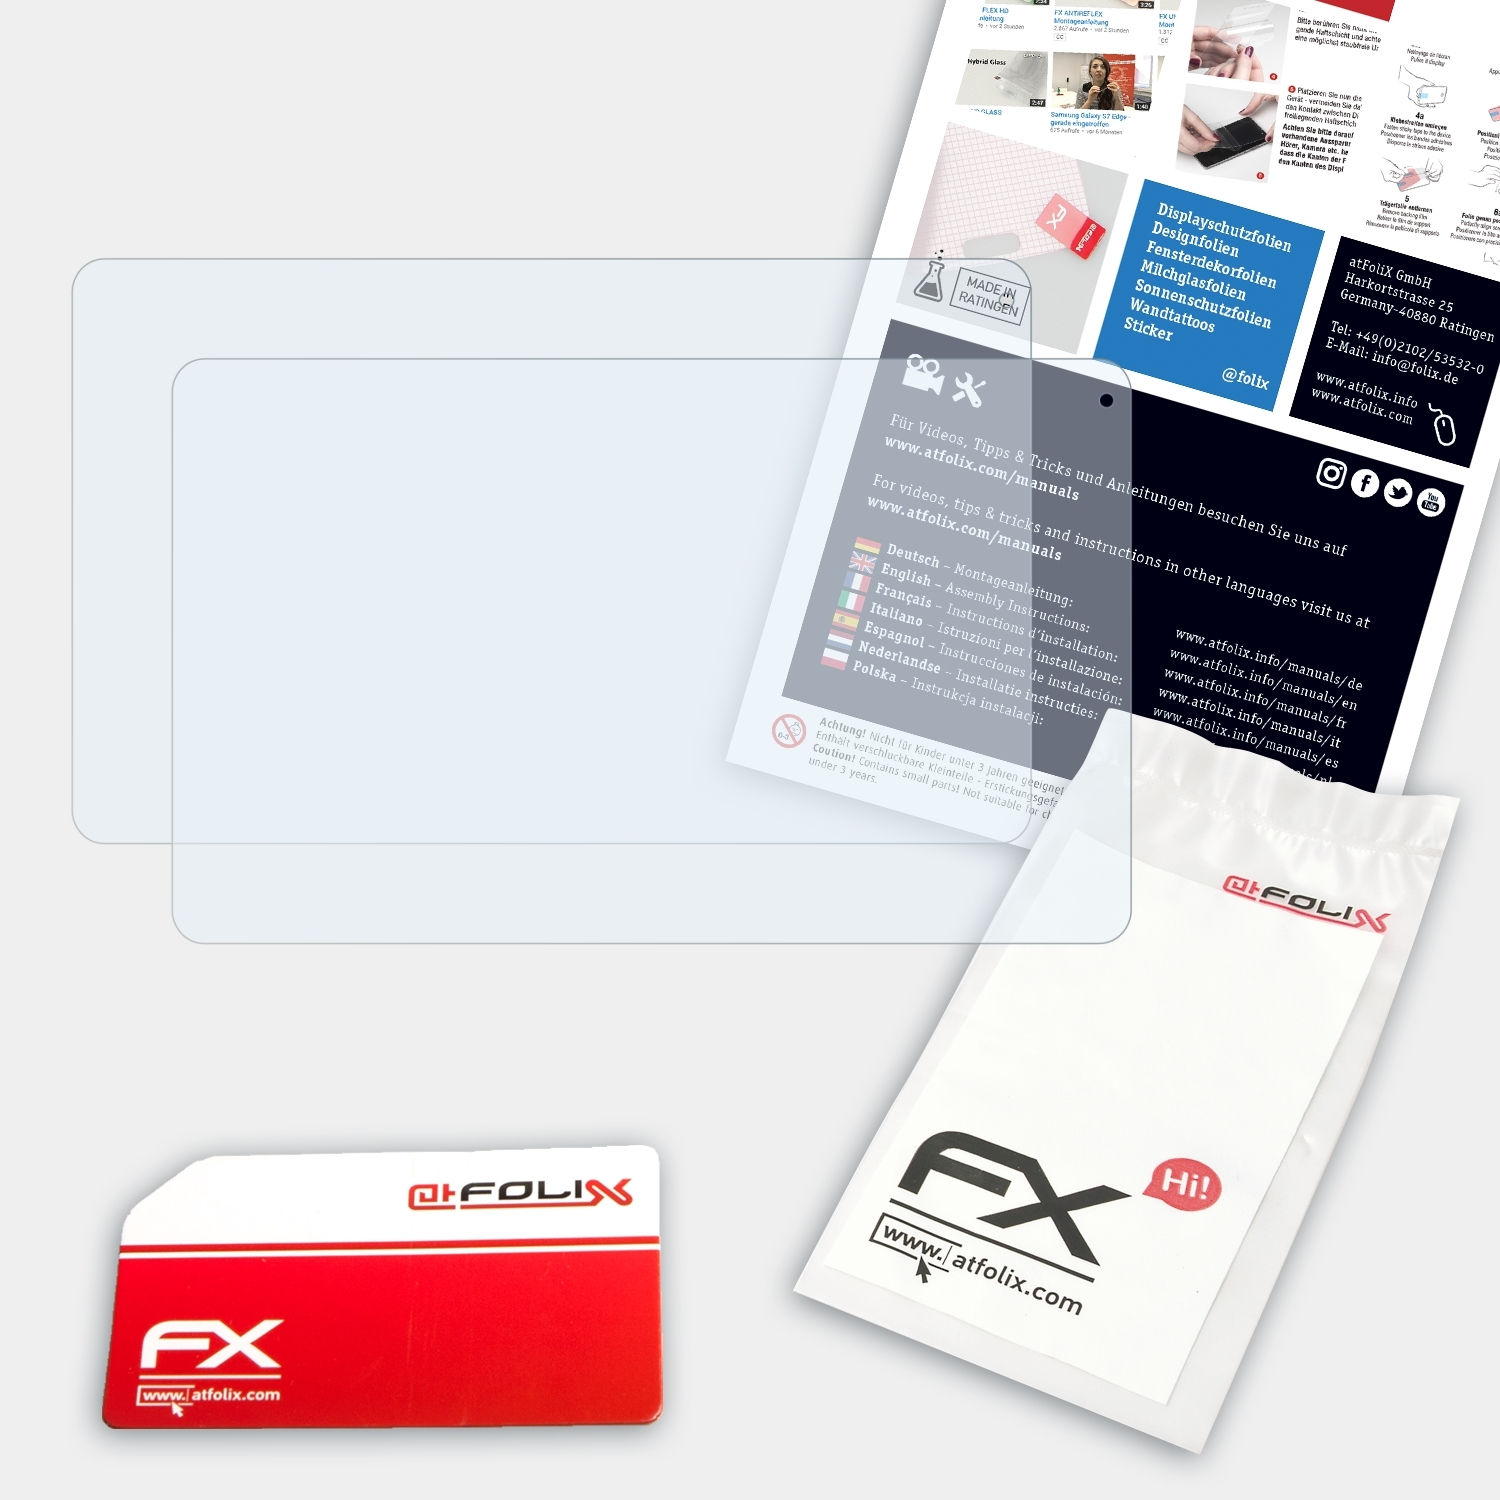 FX-Clear ATFOLIX Displayschutz(für Archos 2x 3G) 101 Platinum